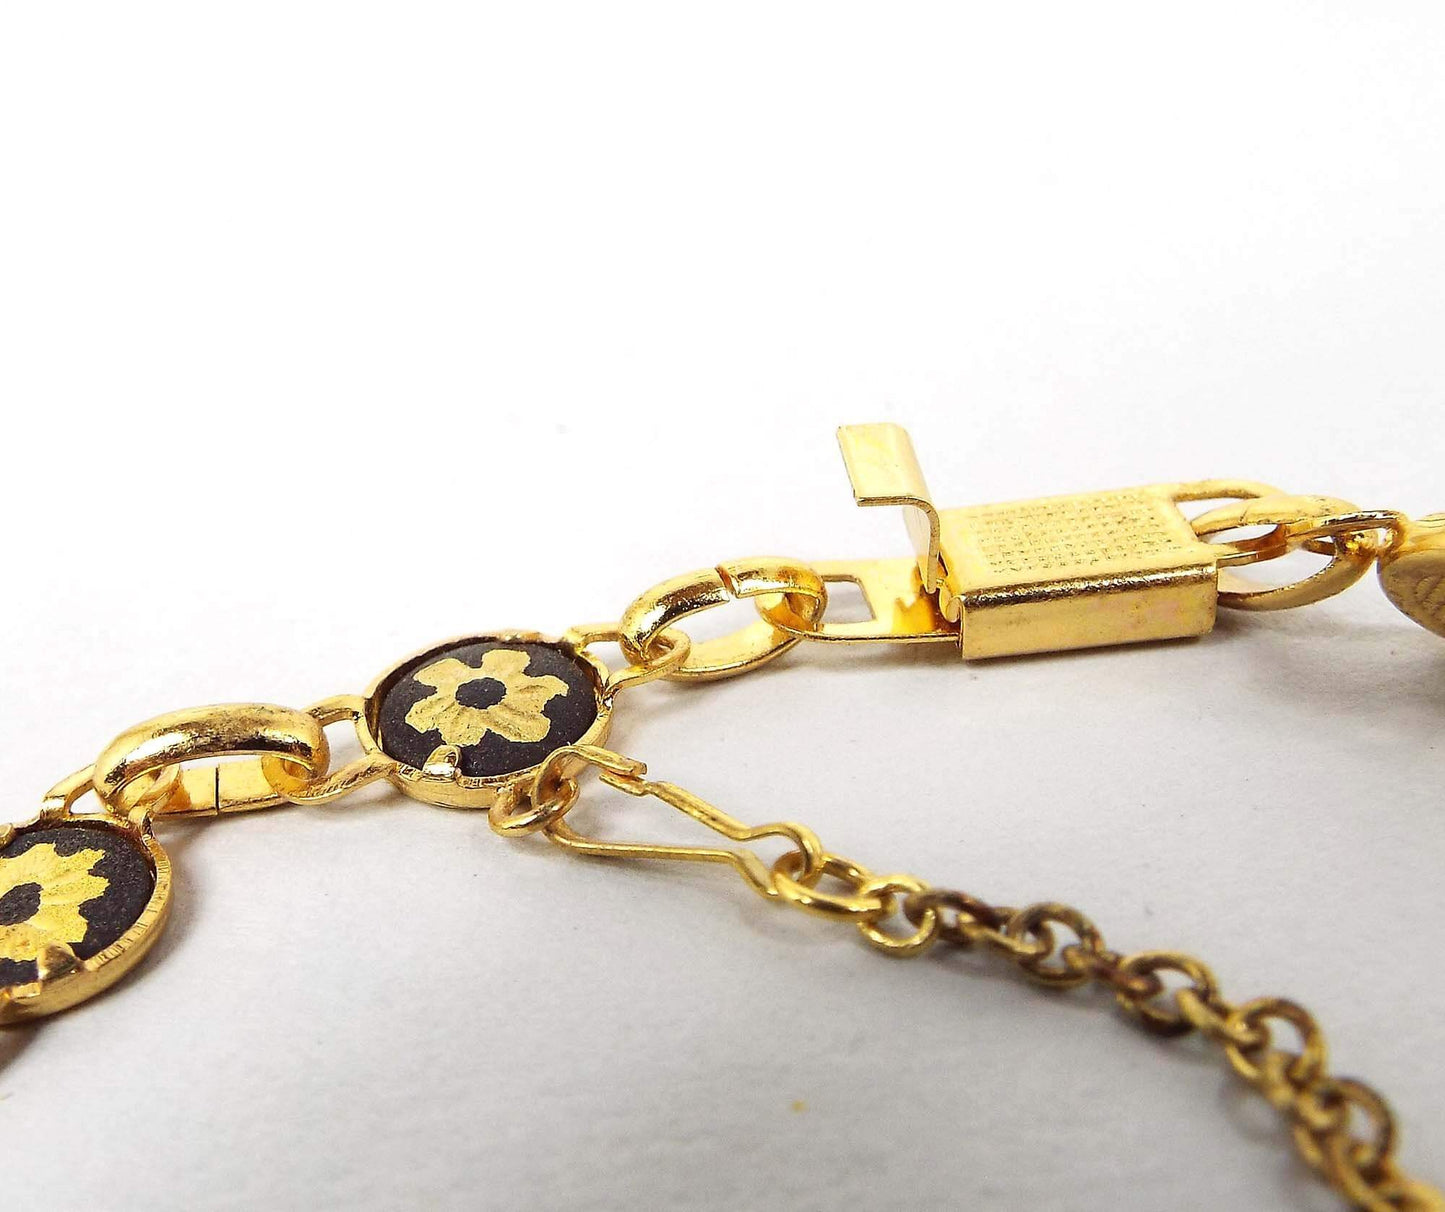 Small Damascene Style Vintage Link Bracelet